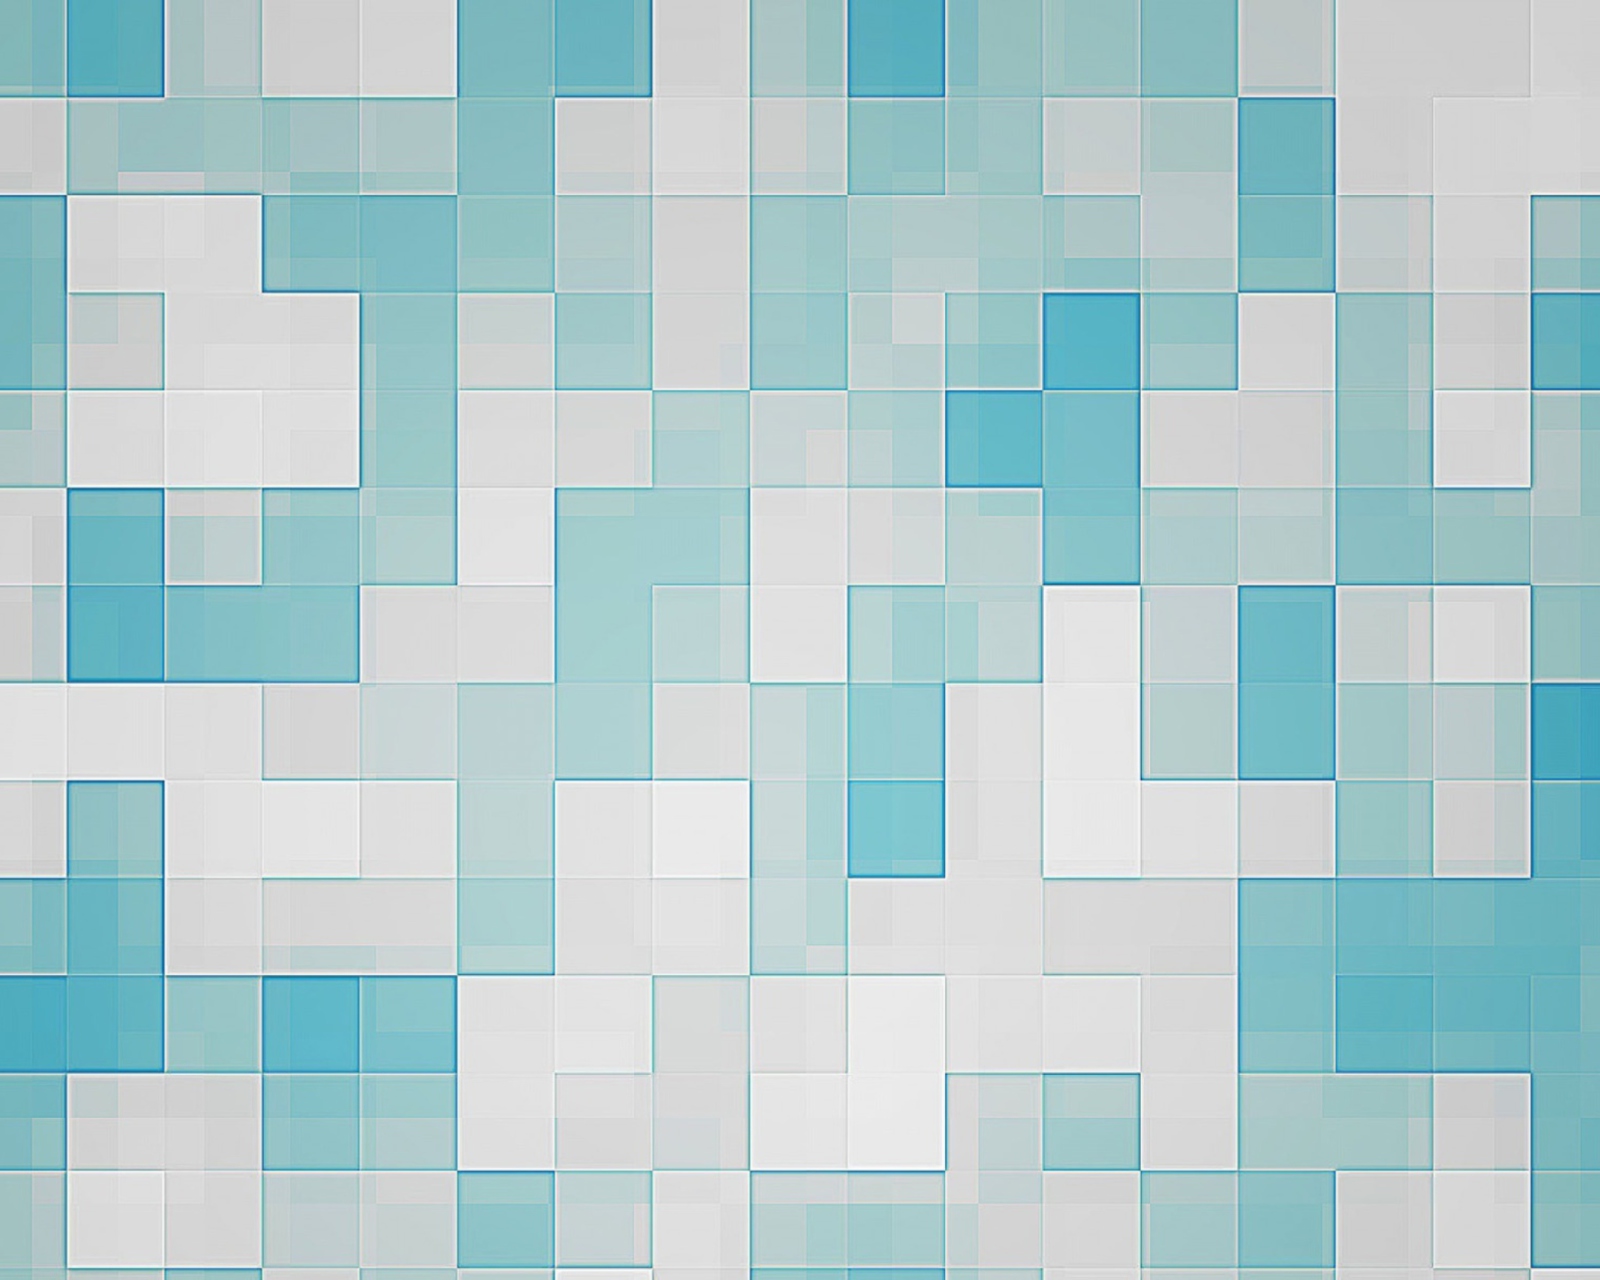 Das Mosaic Wallpaper 1600x1280